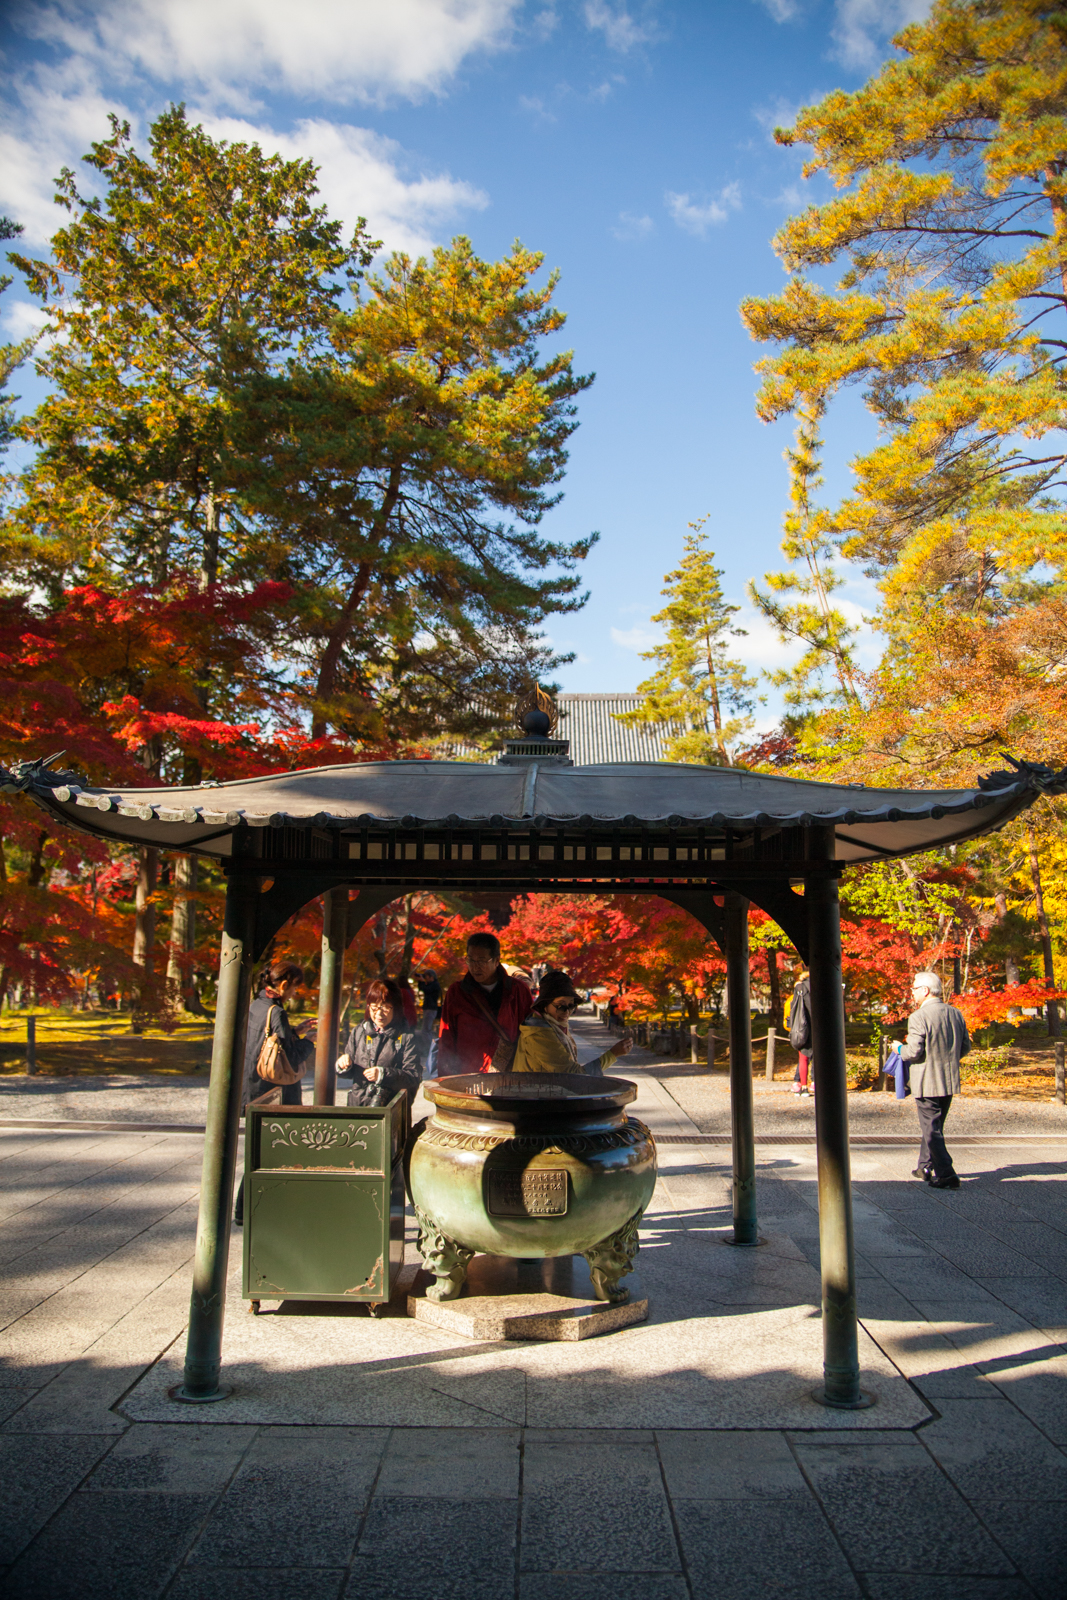 kyoto, kyoto chemin de la philosophie, kyoto momiji, automne kyoto, balade kyoto, séjour kyoto, voyage kyoto, érables kyoto, jardins kyoto, nanzen-ji, nanzen-ji kyoto